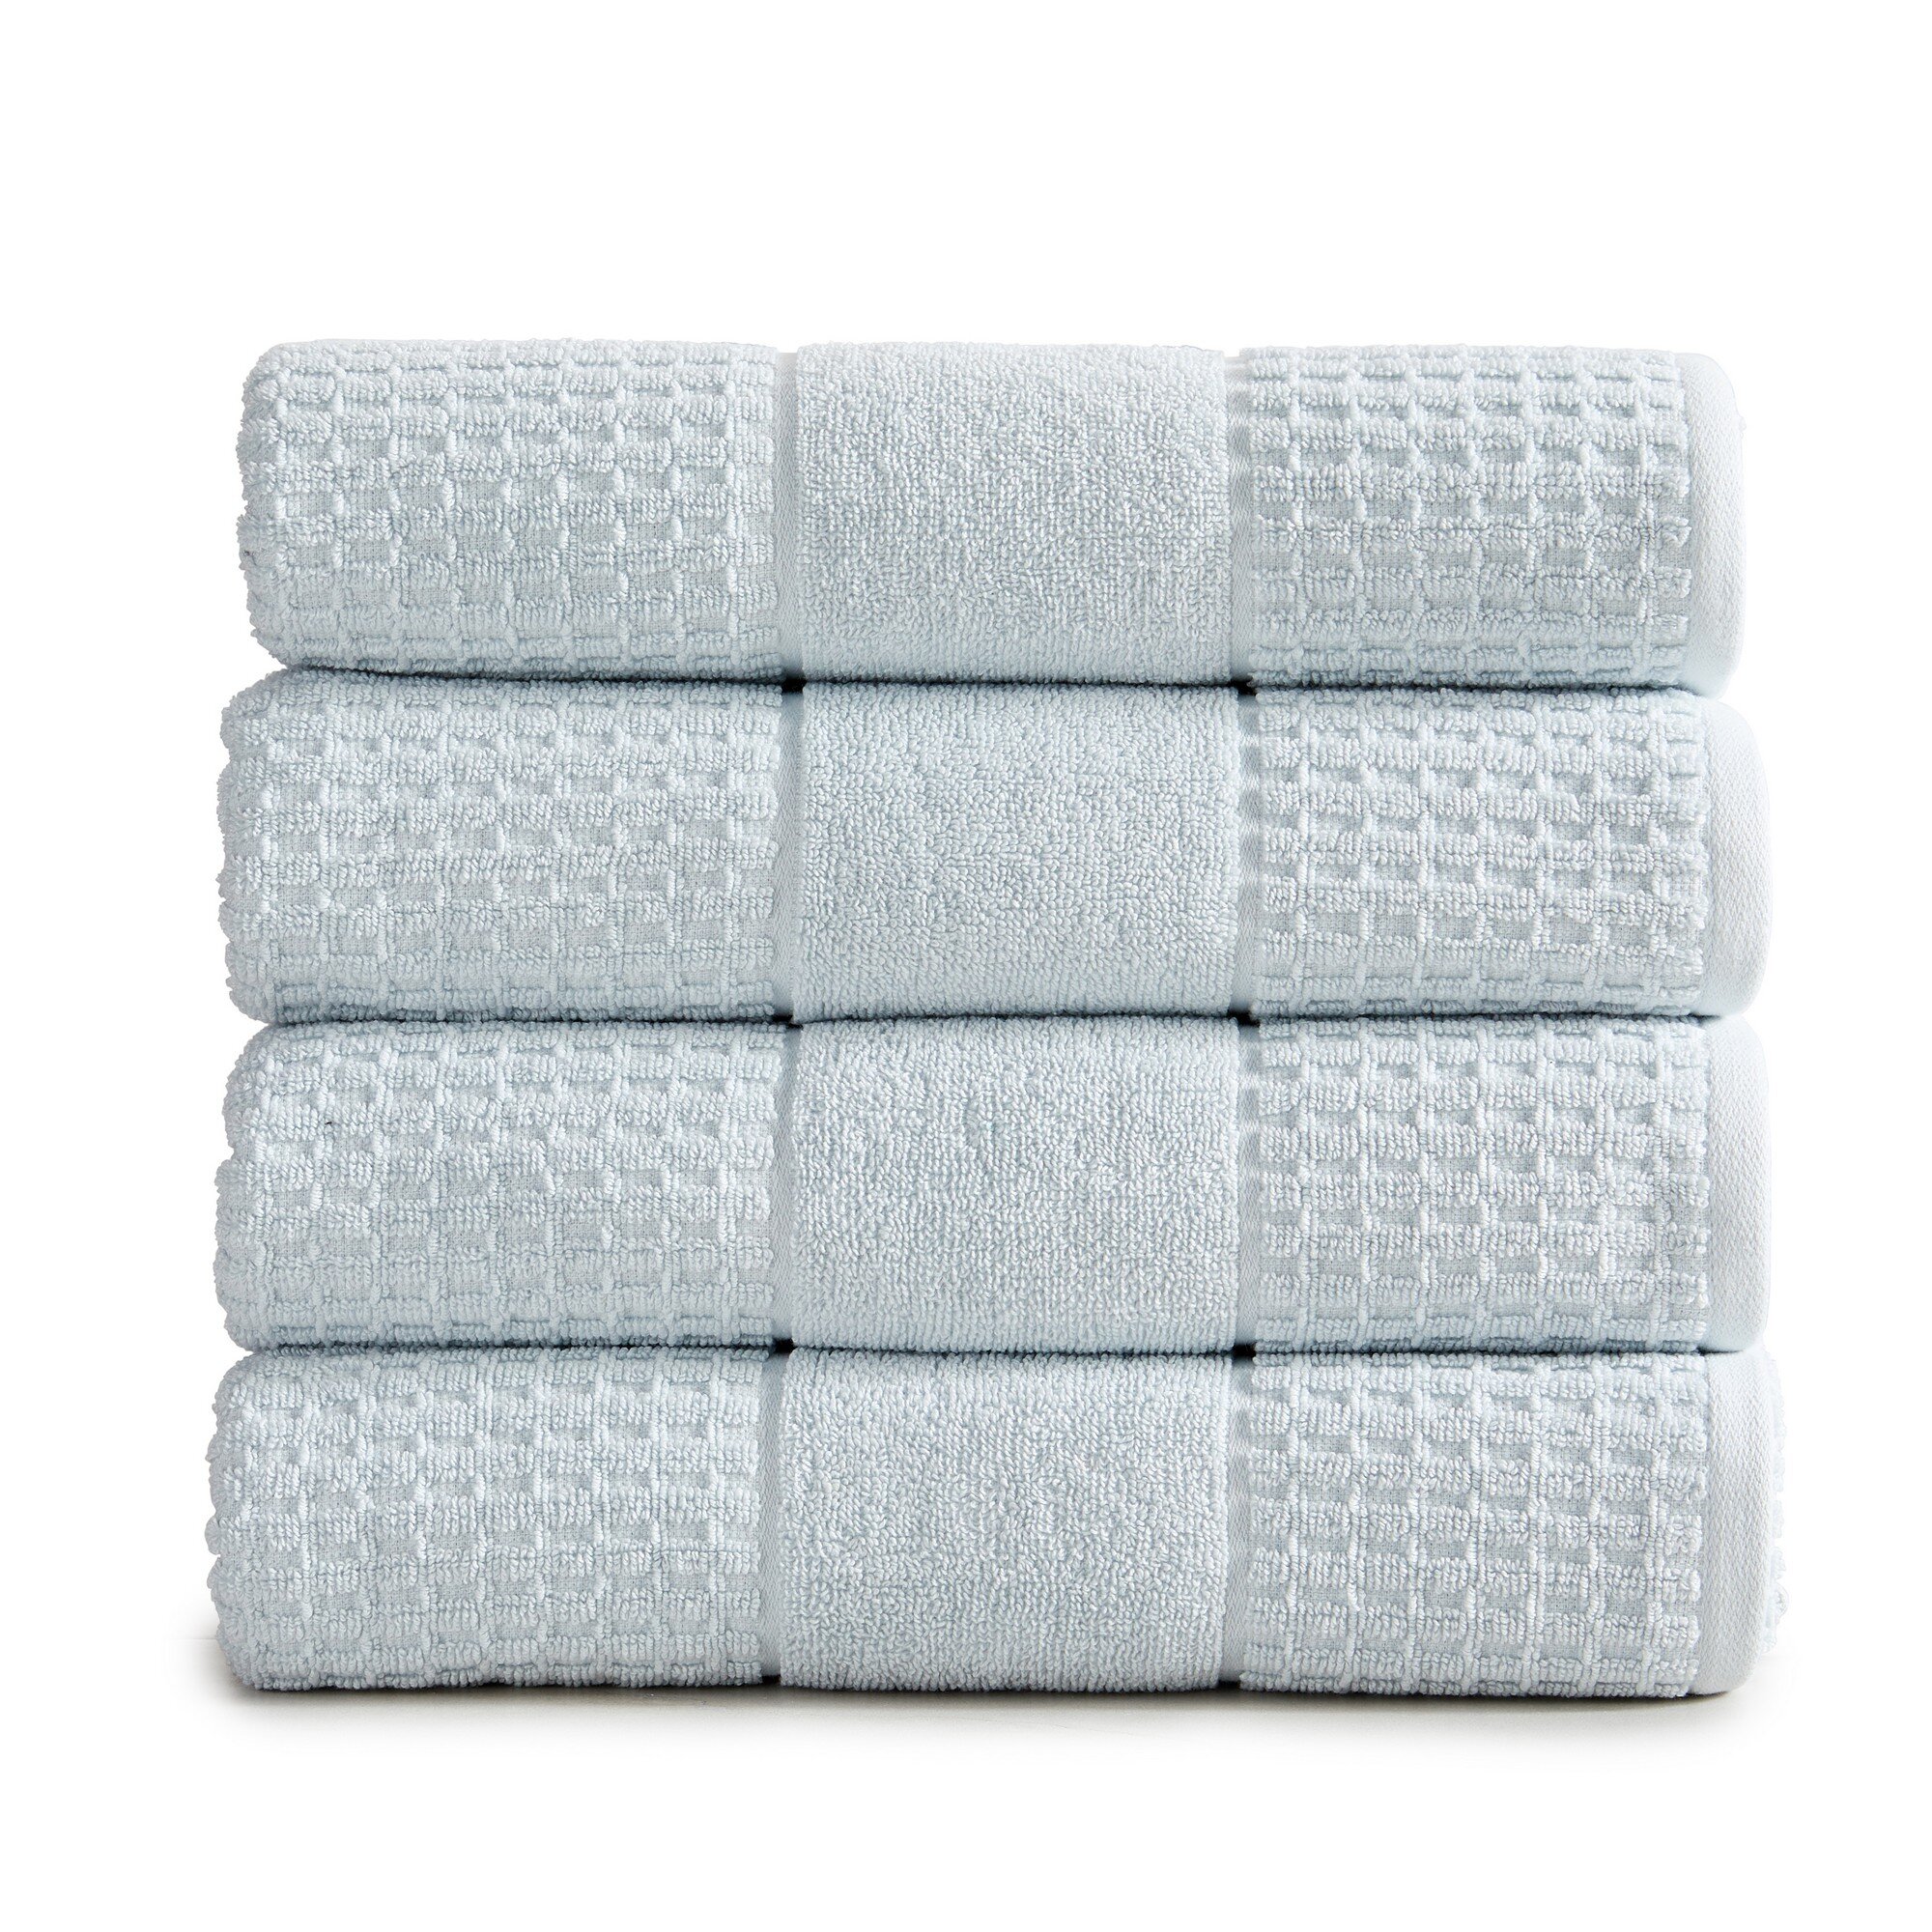 https://assets.wfcdn.com/im/93423763/compr-r85/1812/181234853/aneko-4-piece-100-cotton-towel-set.jpg